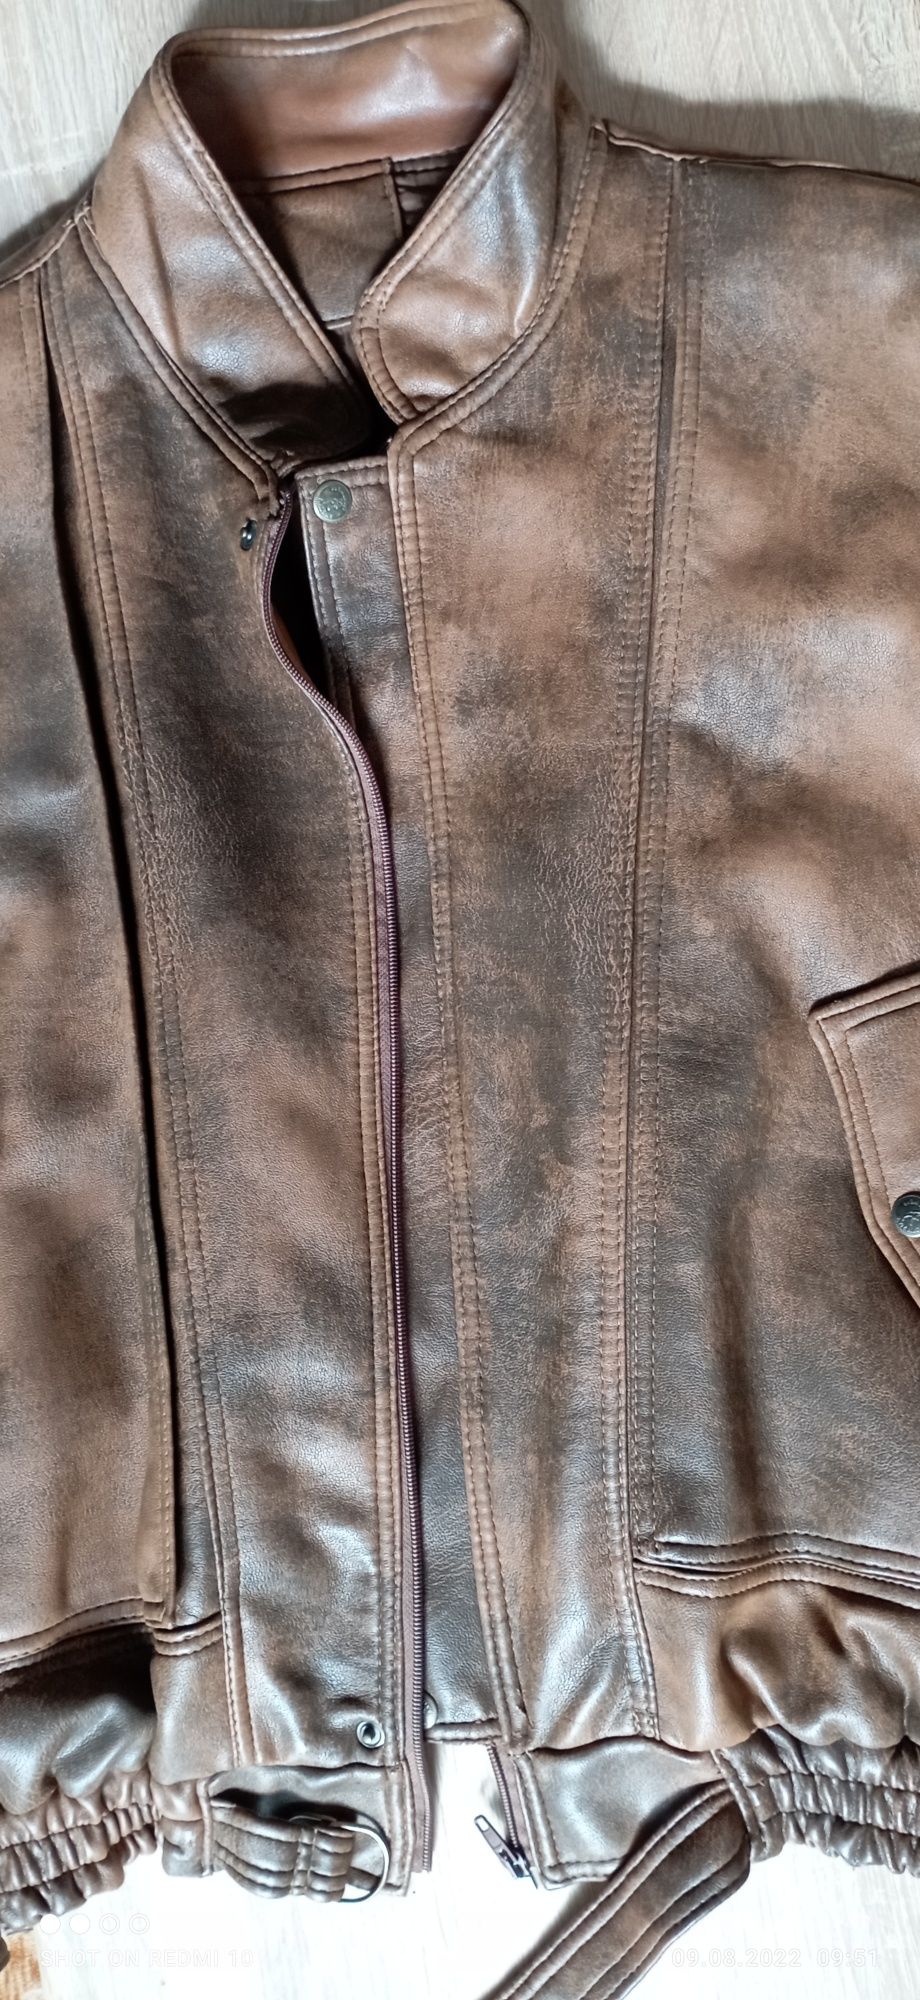 Курточка винтажная, кожзам.  б/у. 54-56 размер.